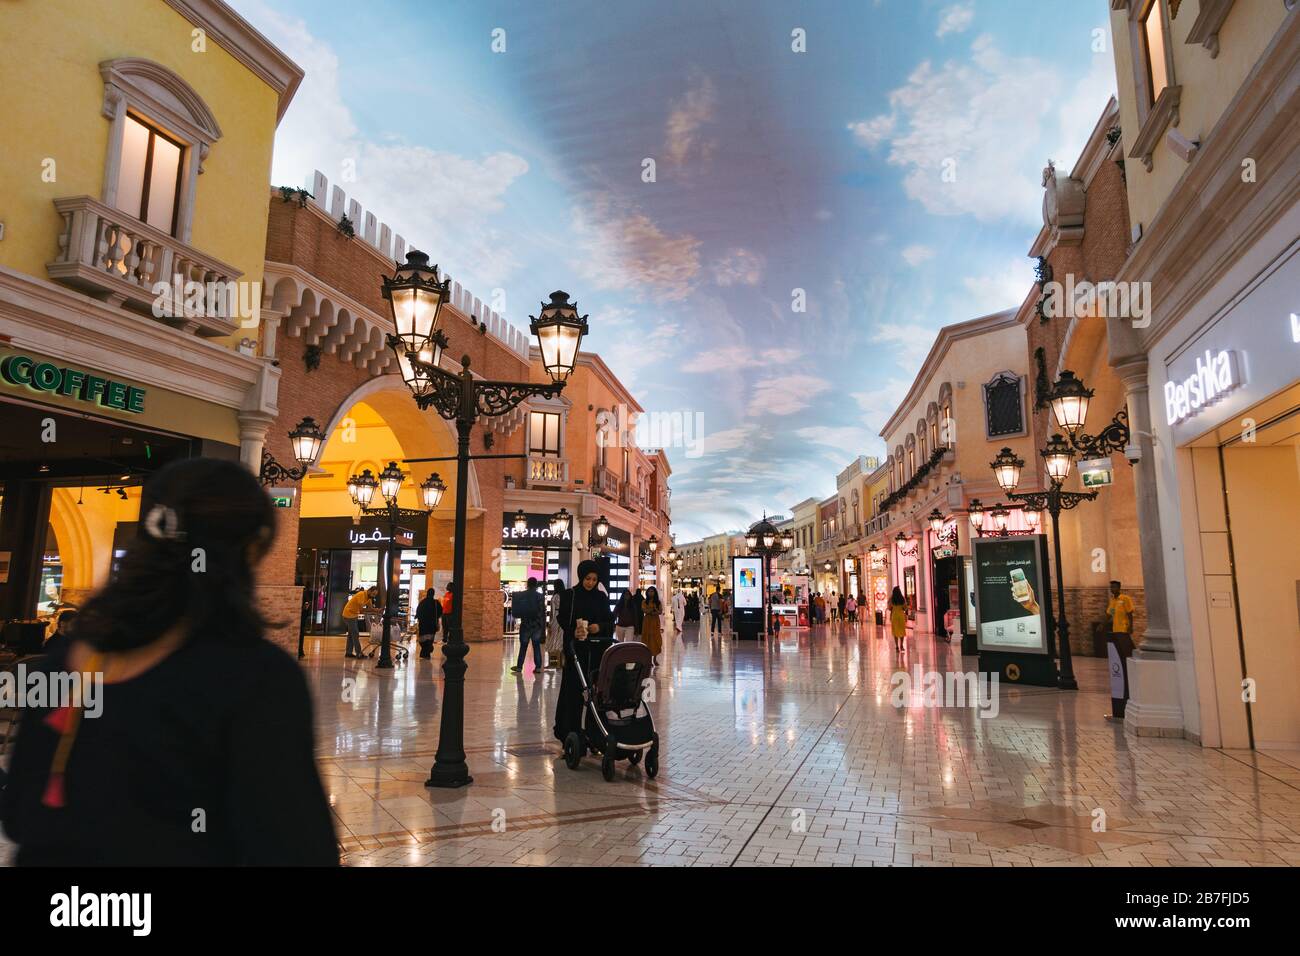 Dentro del centro comercial Villaggio Mall en Doha, Qatar - una 'Venecia mini' con canales, góndolas y un techo artificial de cielo diurno Foto de stock